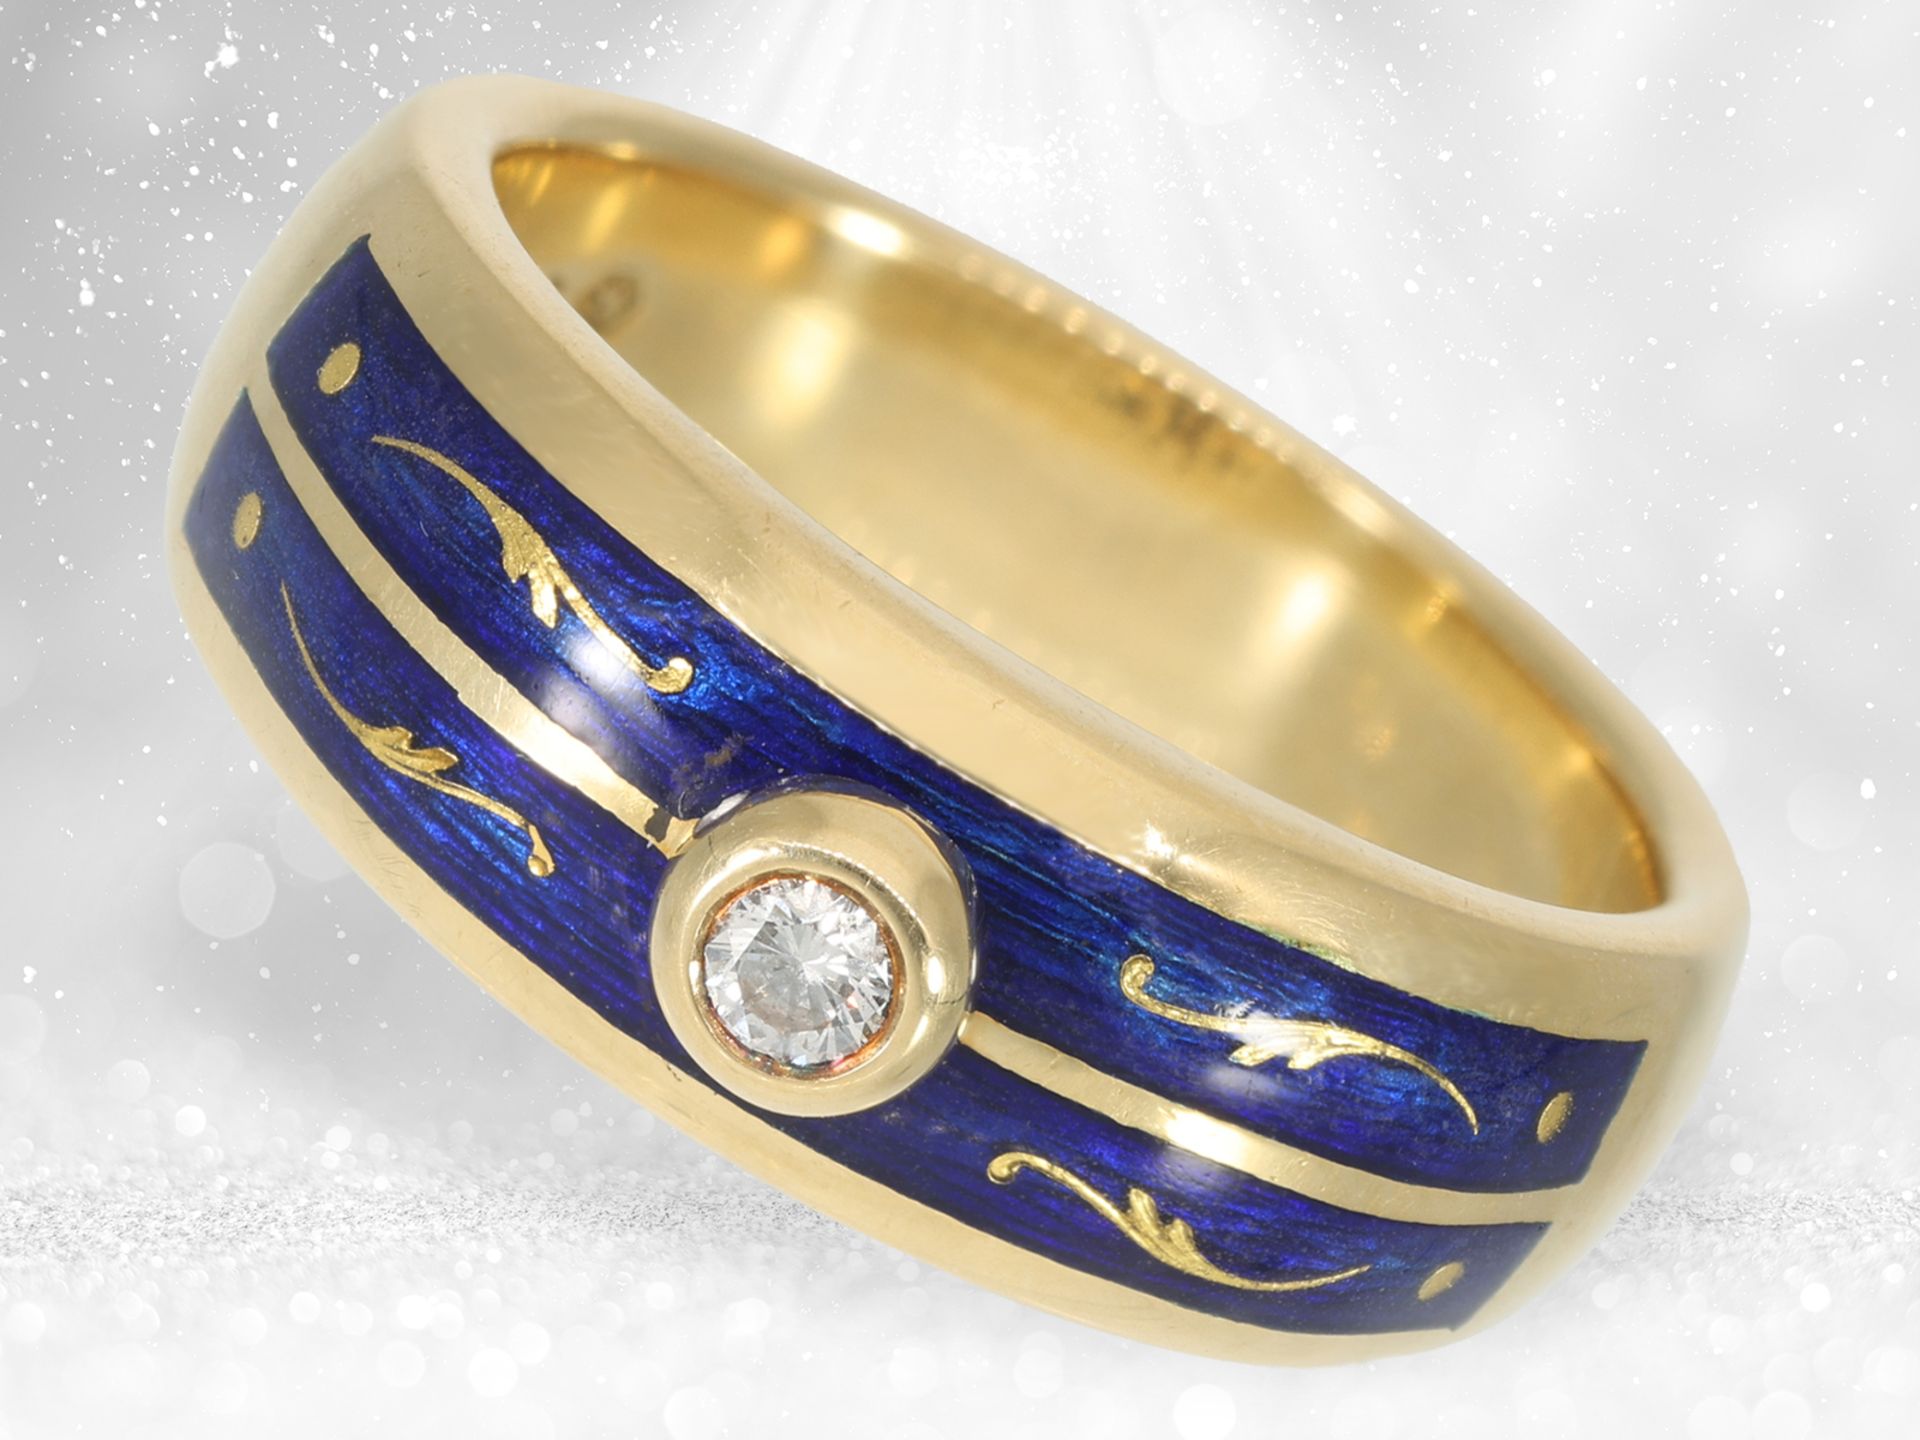 Hochwertiger und seltener limitierter Gold/Emaille-Ring mit Brillant, Fabergé by Victor Mayer, inter - Bild 2 aus 4